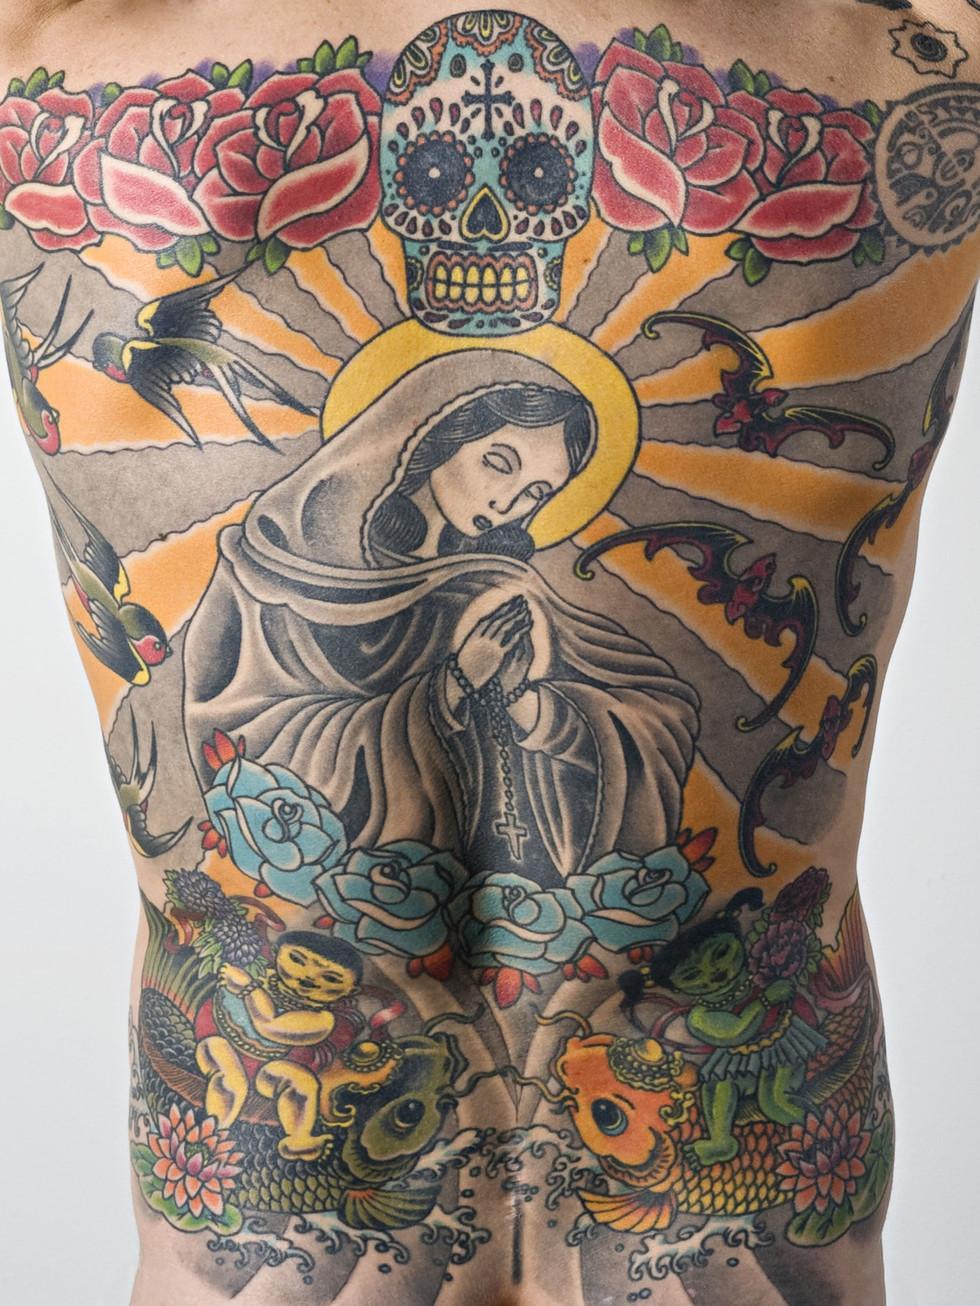 RÃ©sultat de recherche d'images pour "tattooist swiss"